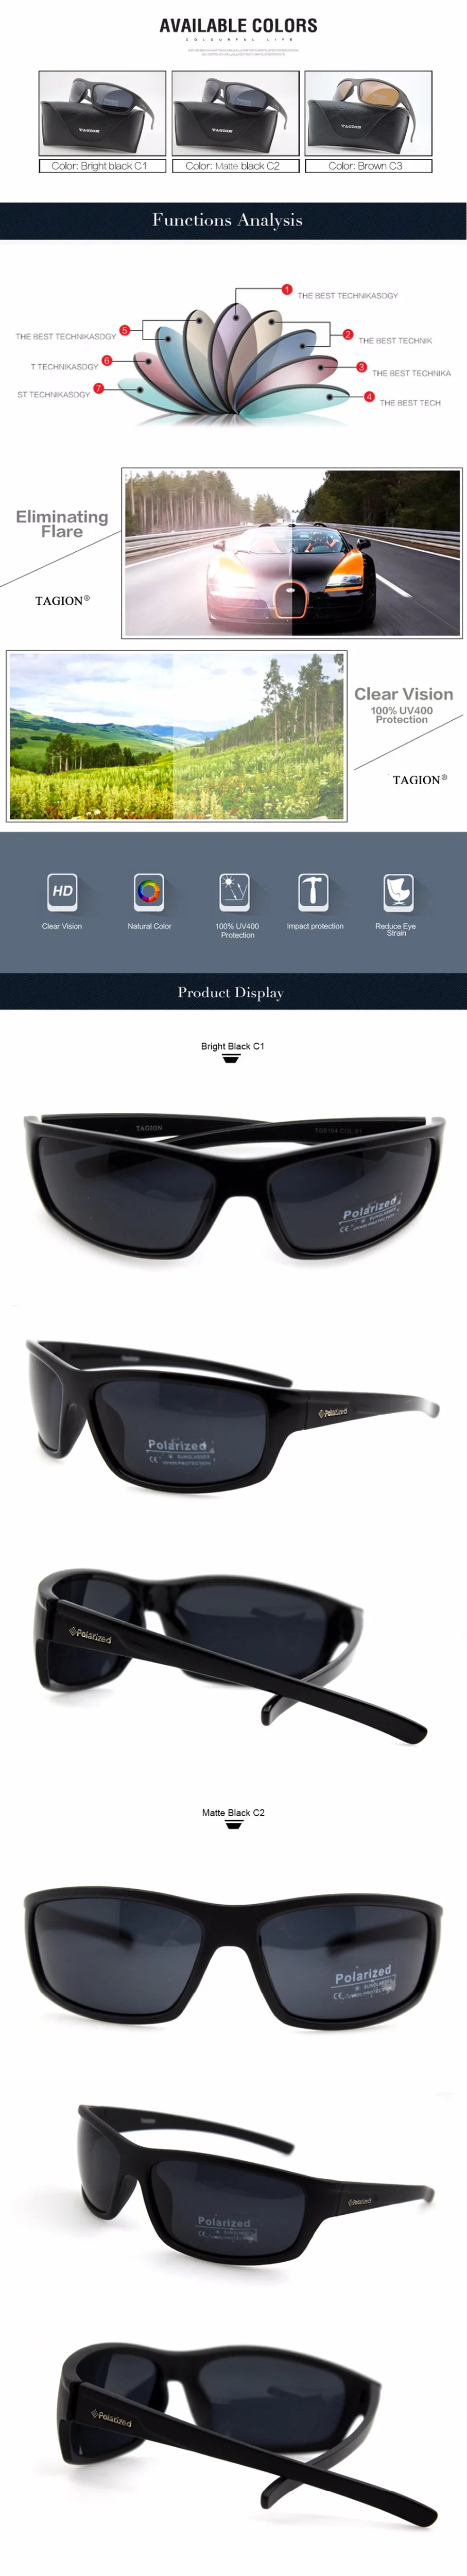 TAGION, мужские спортивные солнцезащитные очки, поляризационные, уф400, уличные очки, линзы для вождения, черные очки без коробки, TG5104